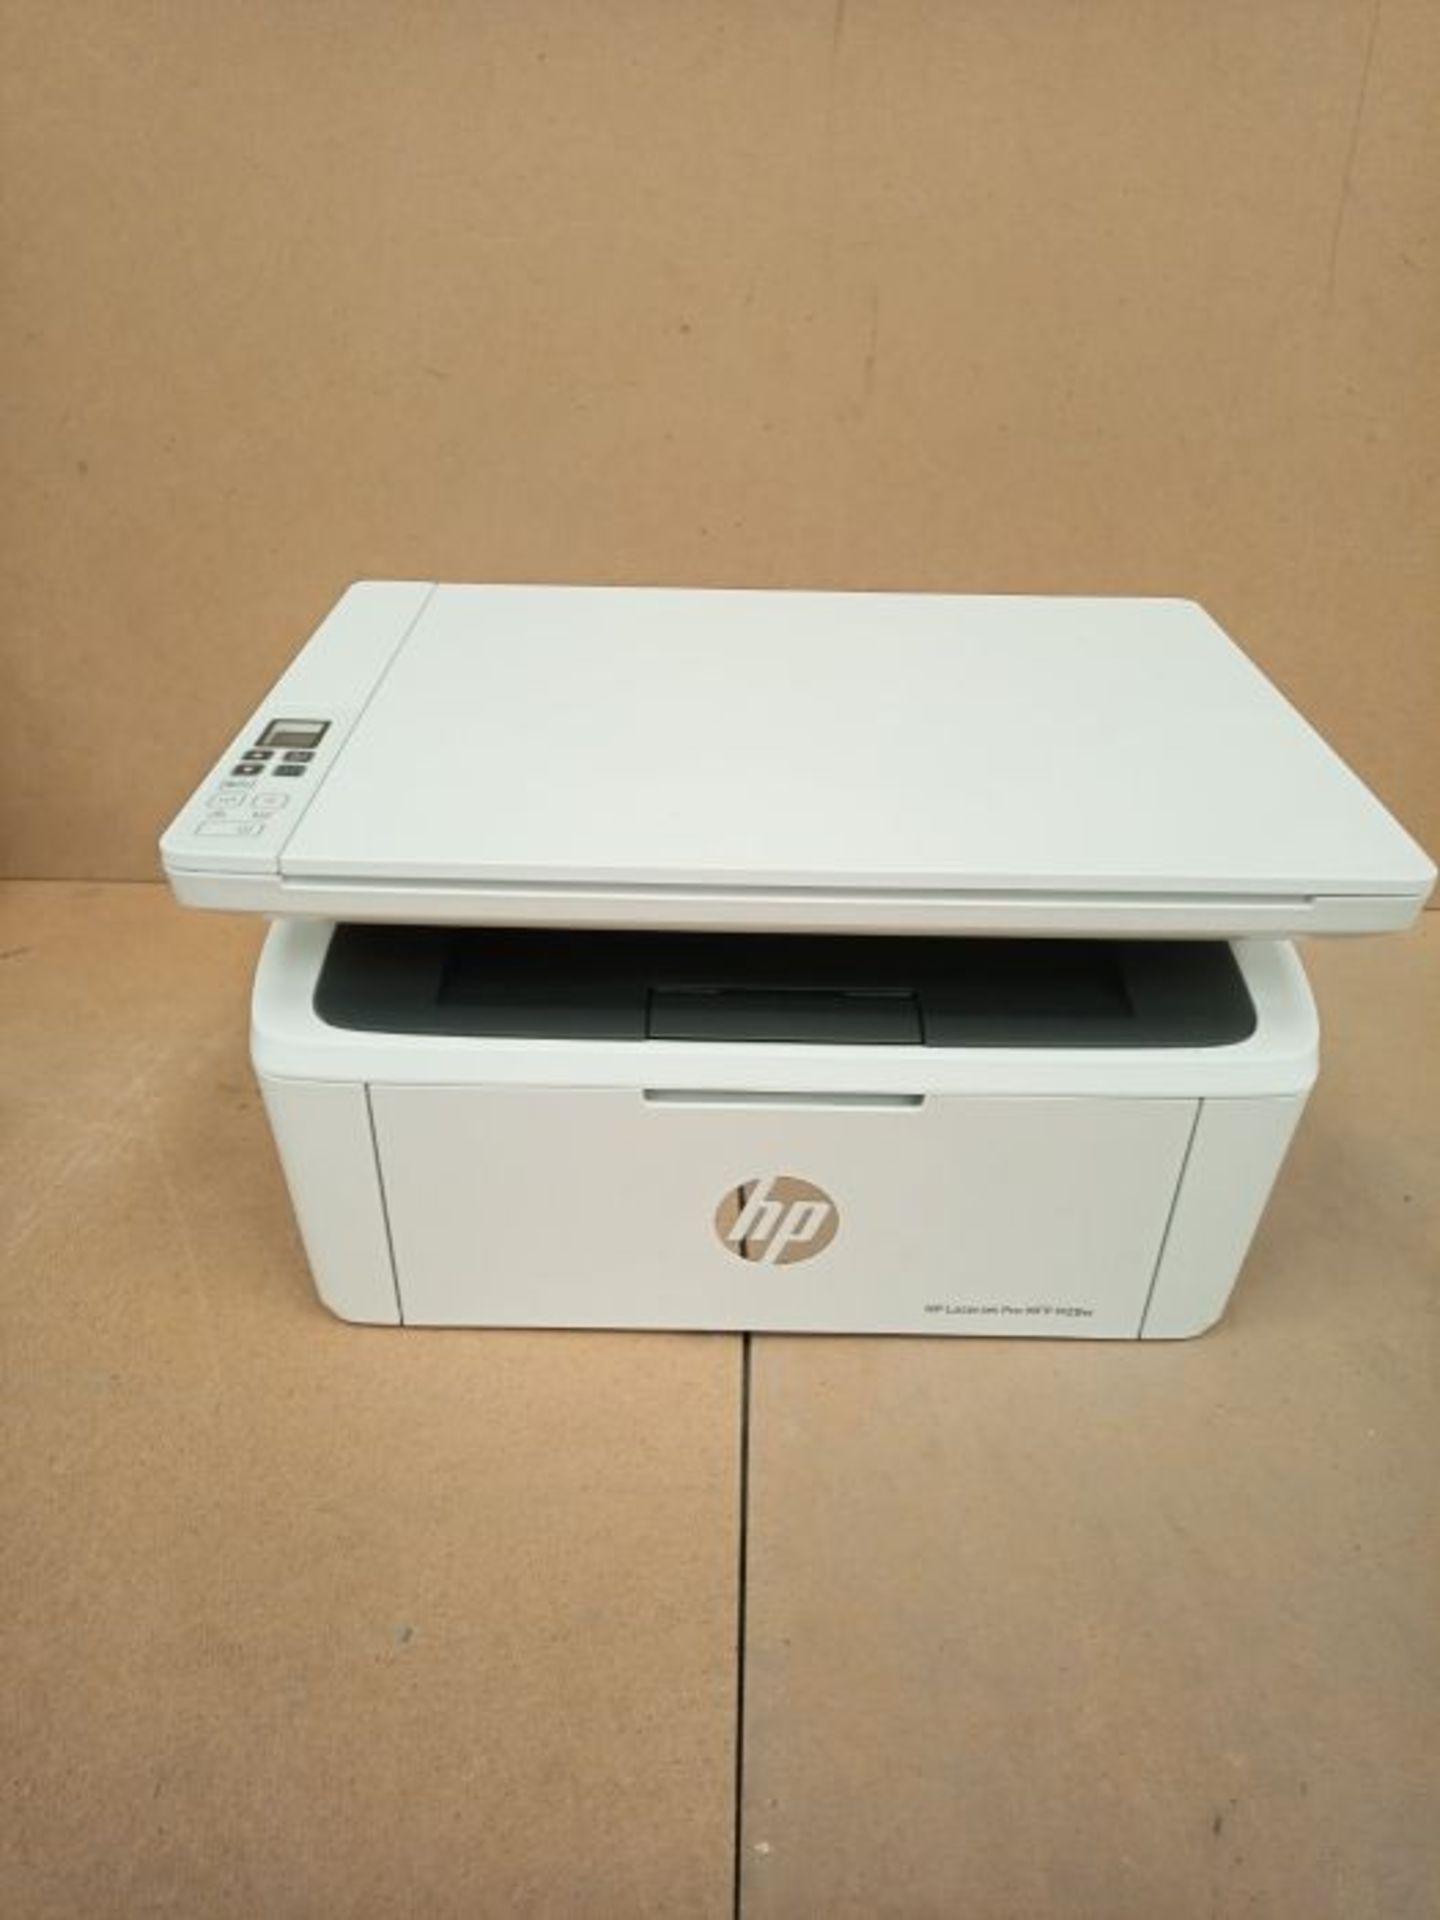 RRP £179.00 HP LaserJet Pro M28w Multi-Function Printer, White - Image 2 of 2